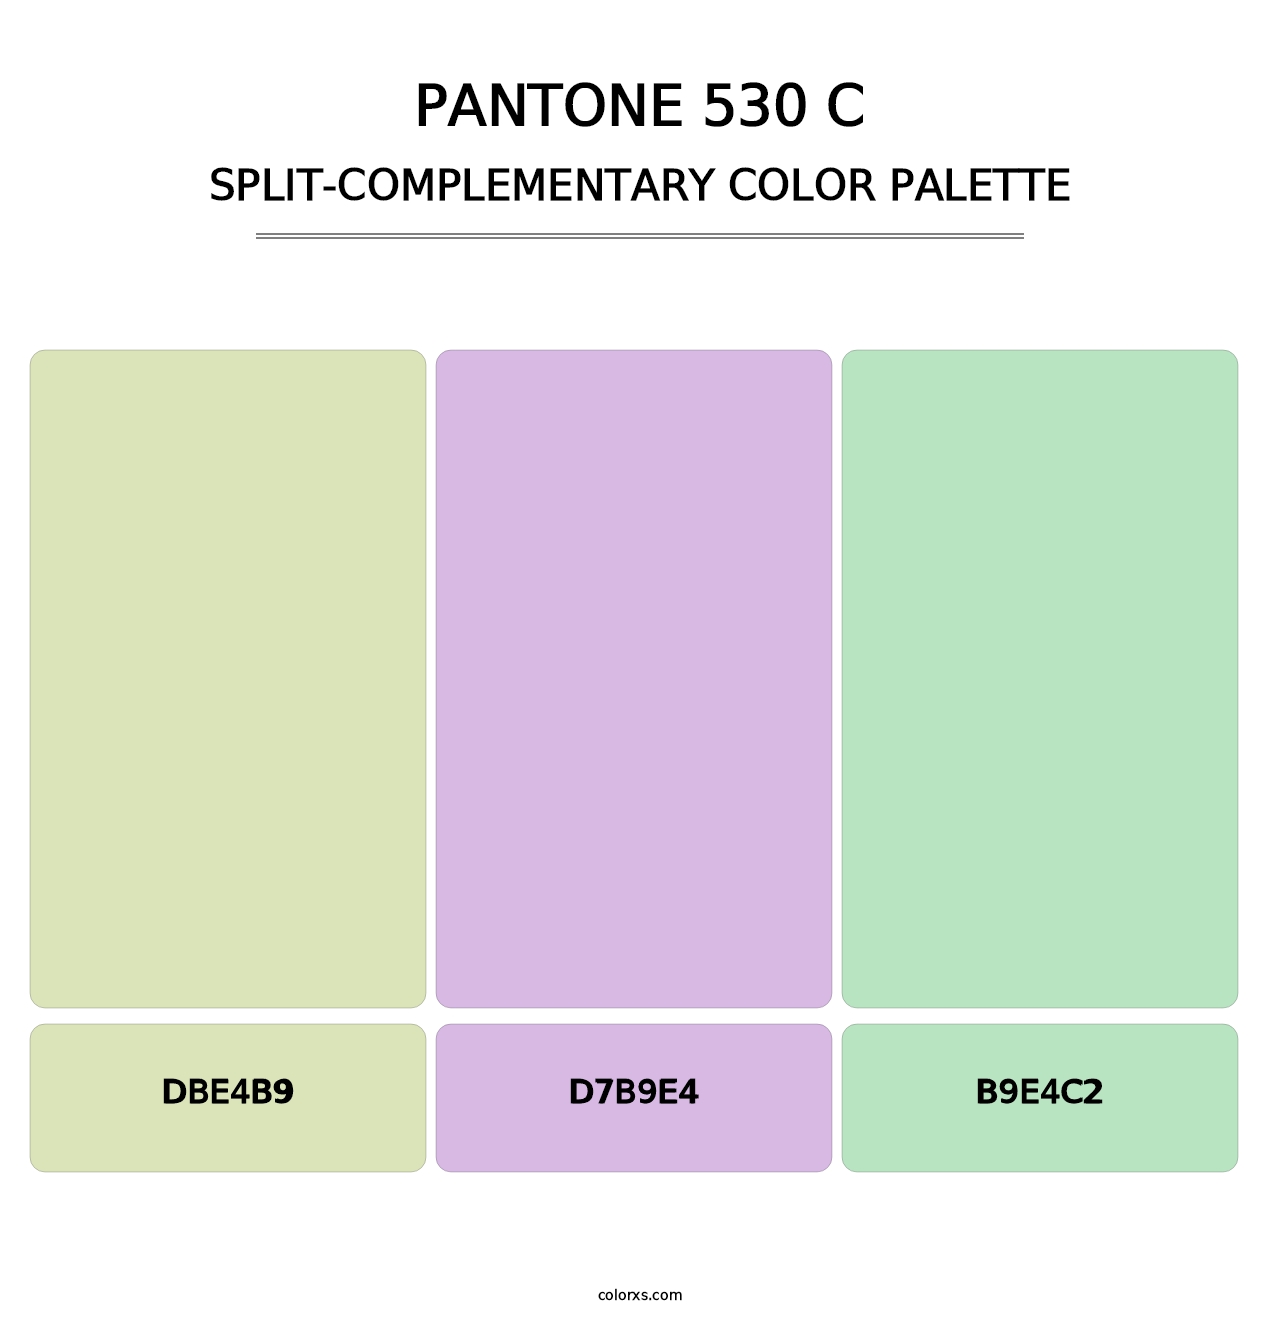 PANTONE 530 C - Split-Complementary Color Palette